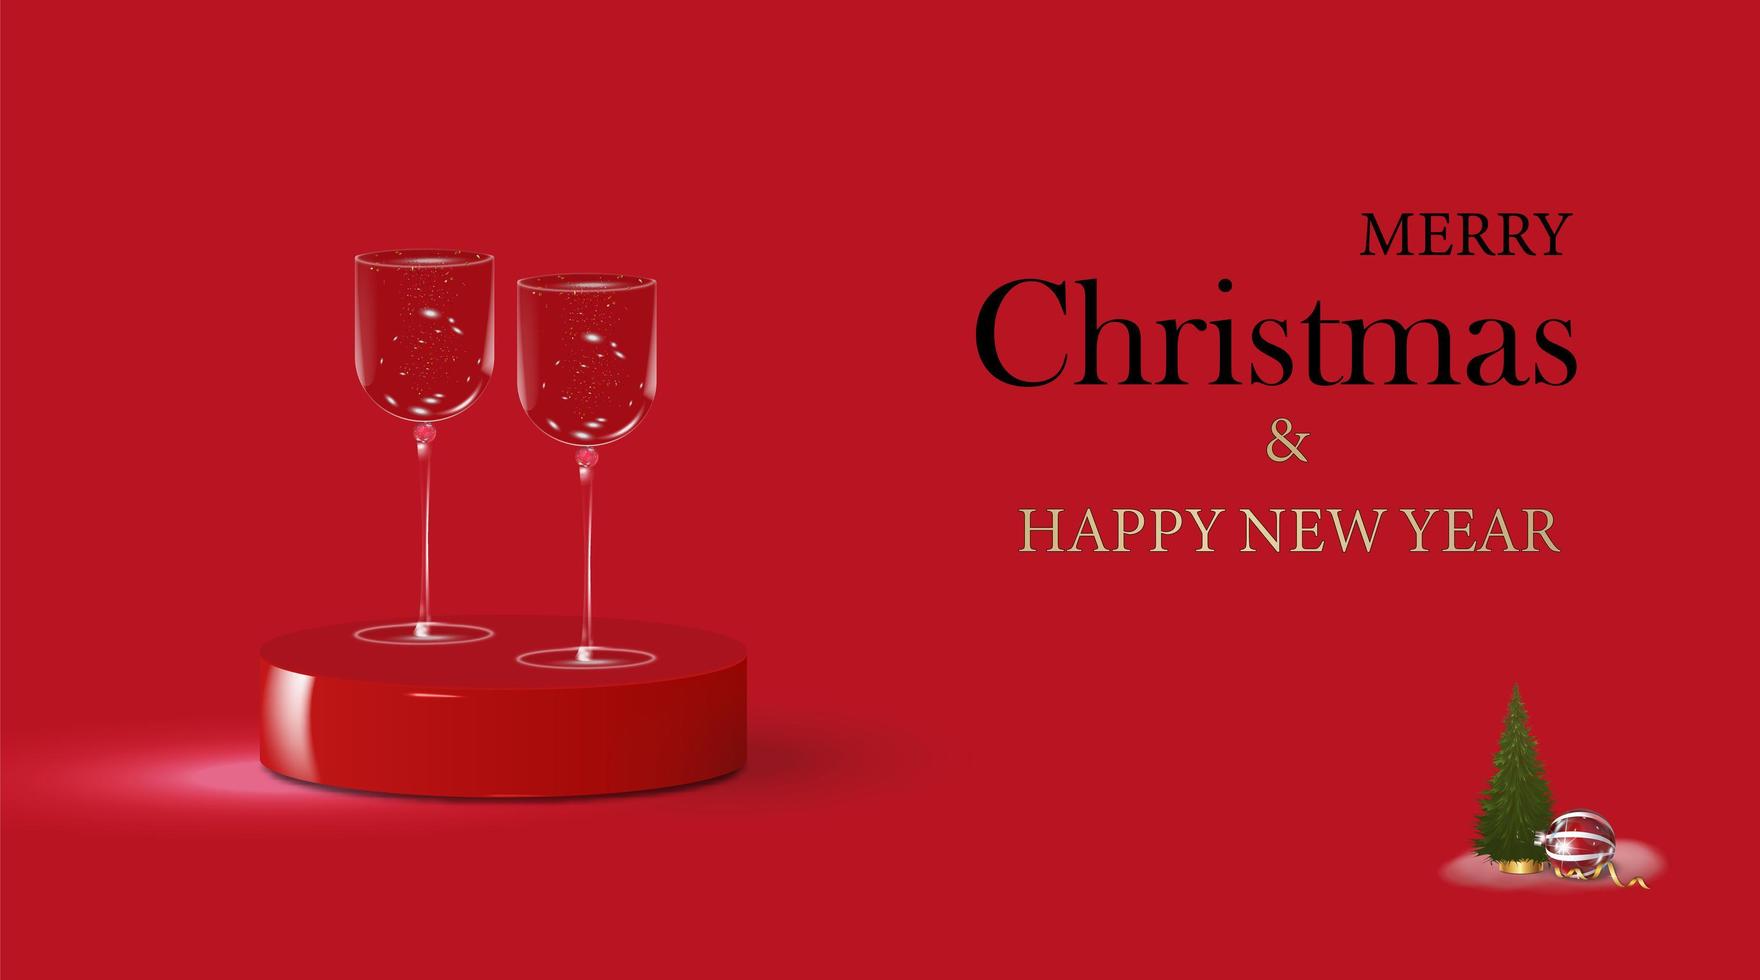 navidad hermosas dos copas con lentejuelas y un árbol de navidad, plantilla en blanco. diseño 3d realista de año nuevo festivo. fondo rojo ilustración vectorial vector